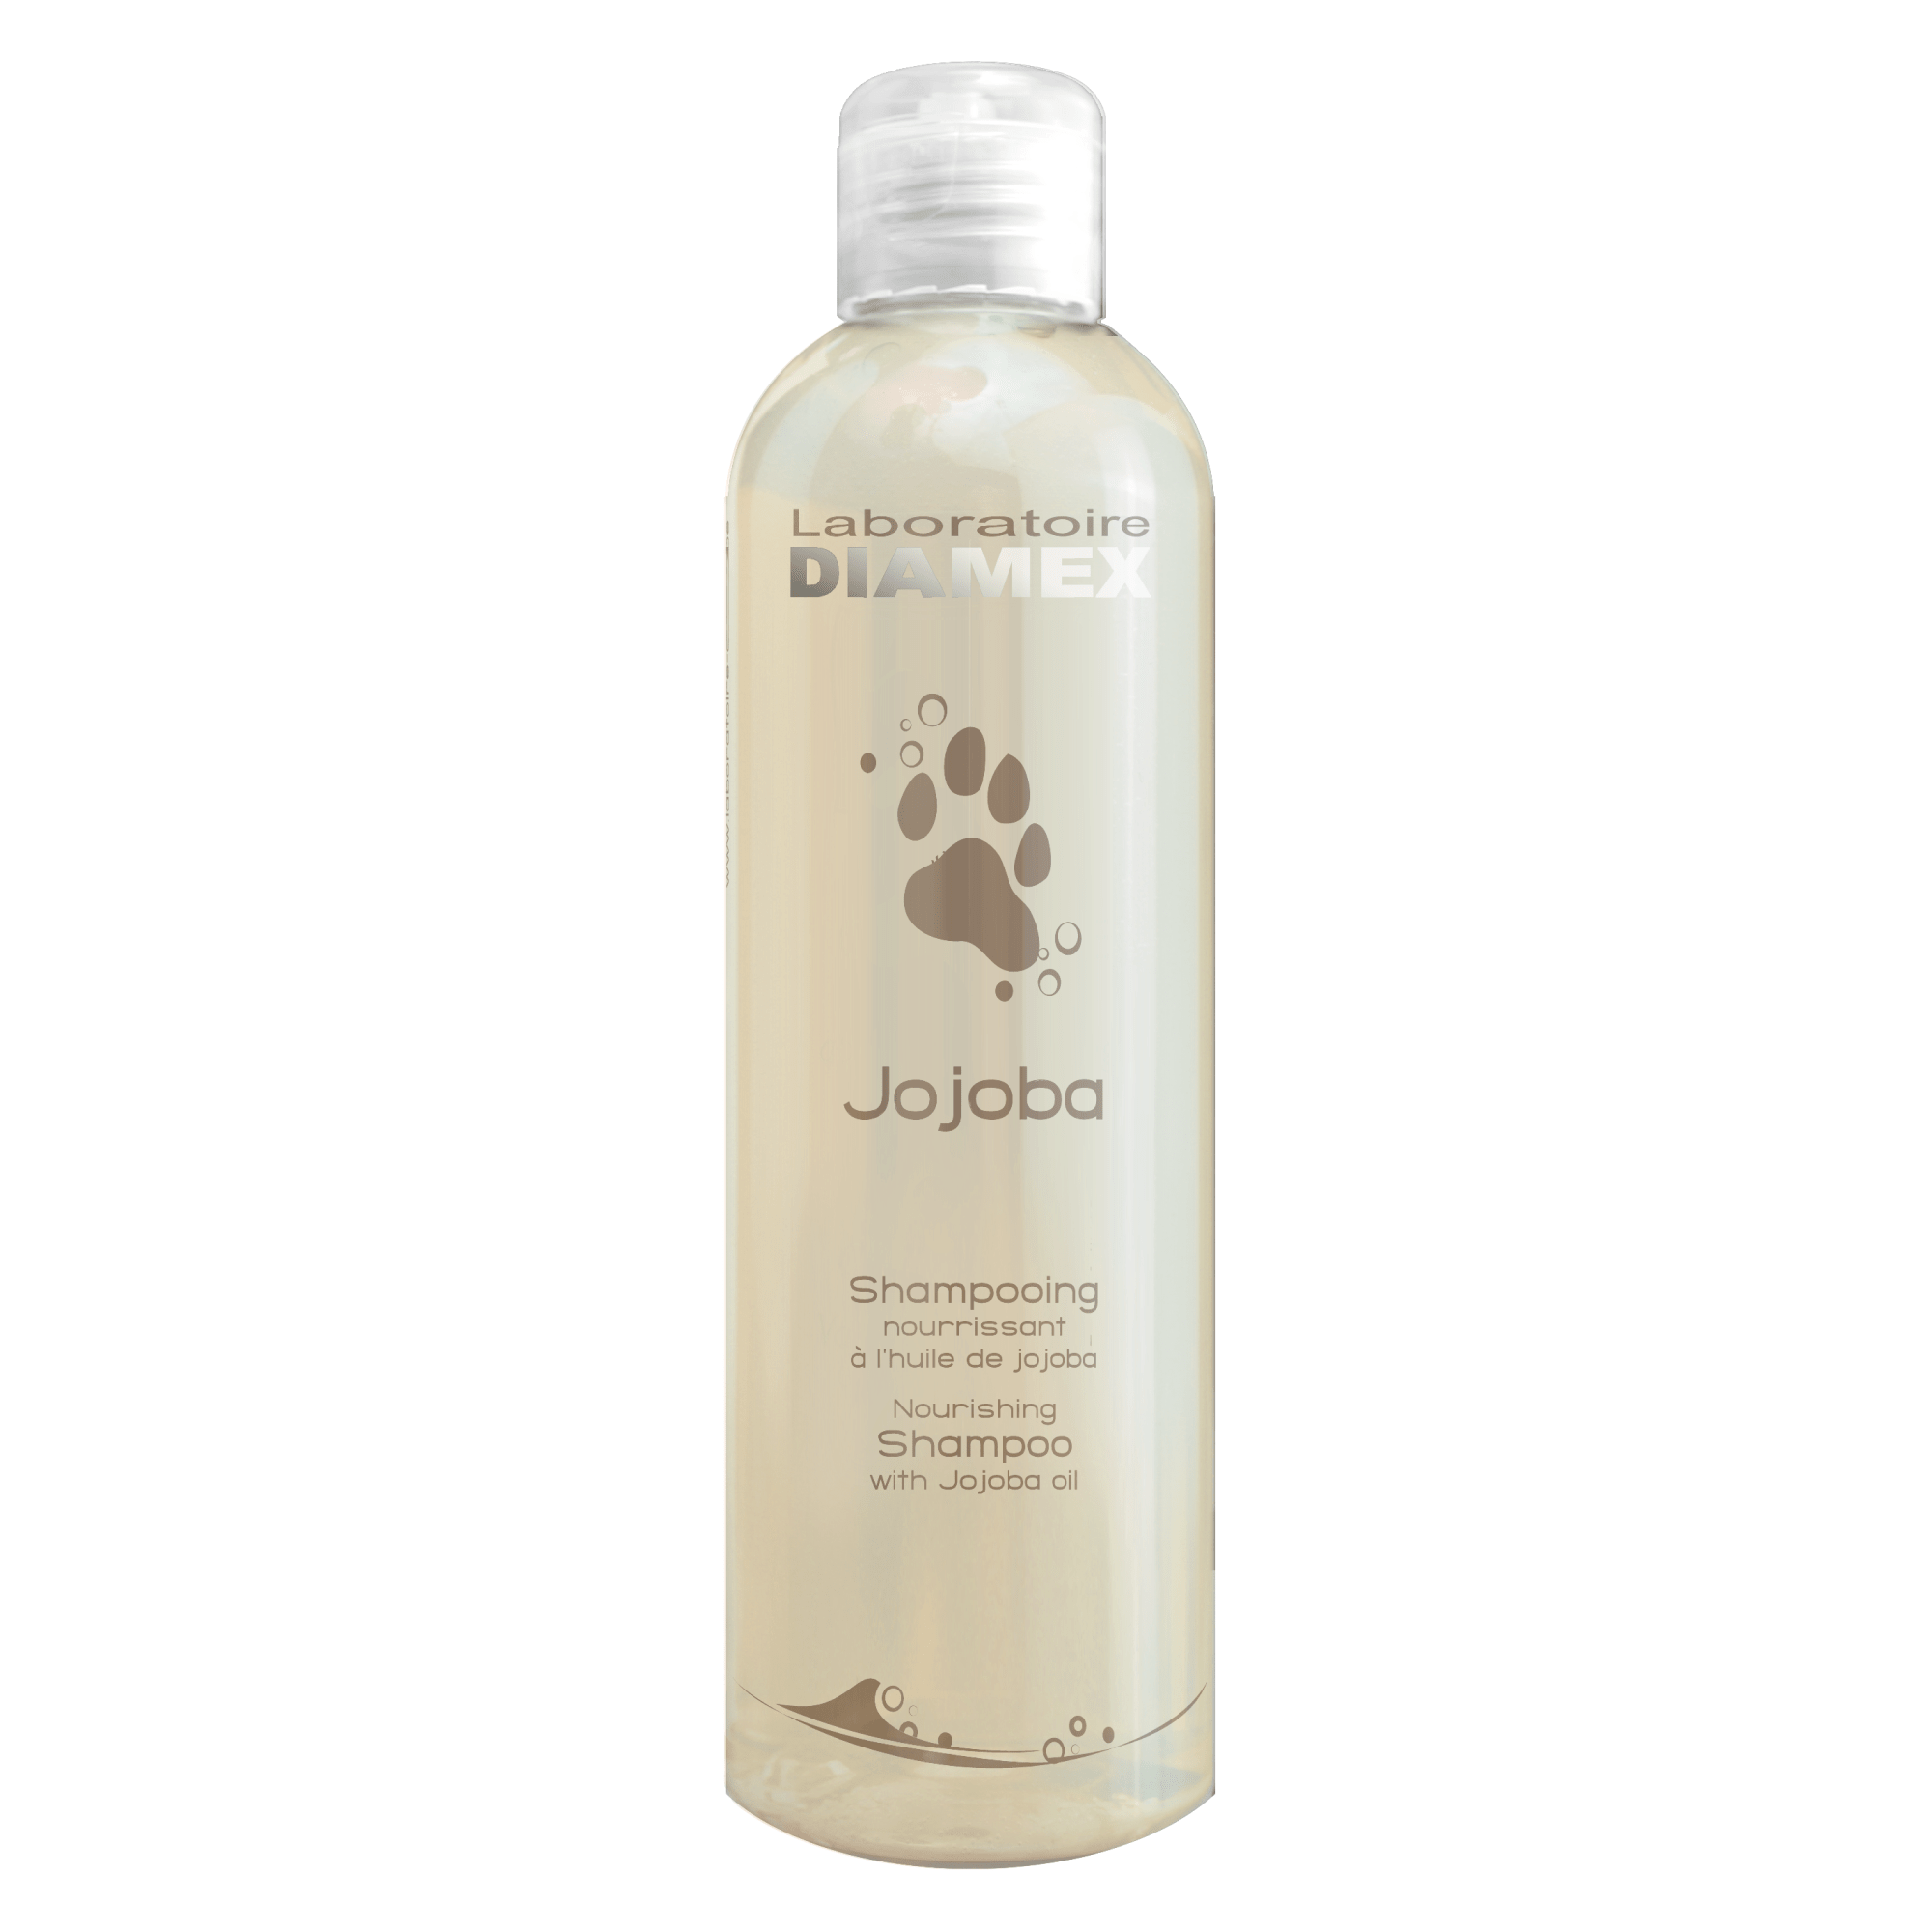 La photo d'un shampoing biologique pour chiens au Jojoba de la marque Diamex